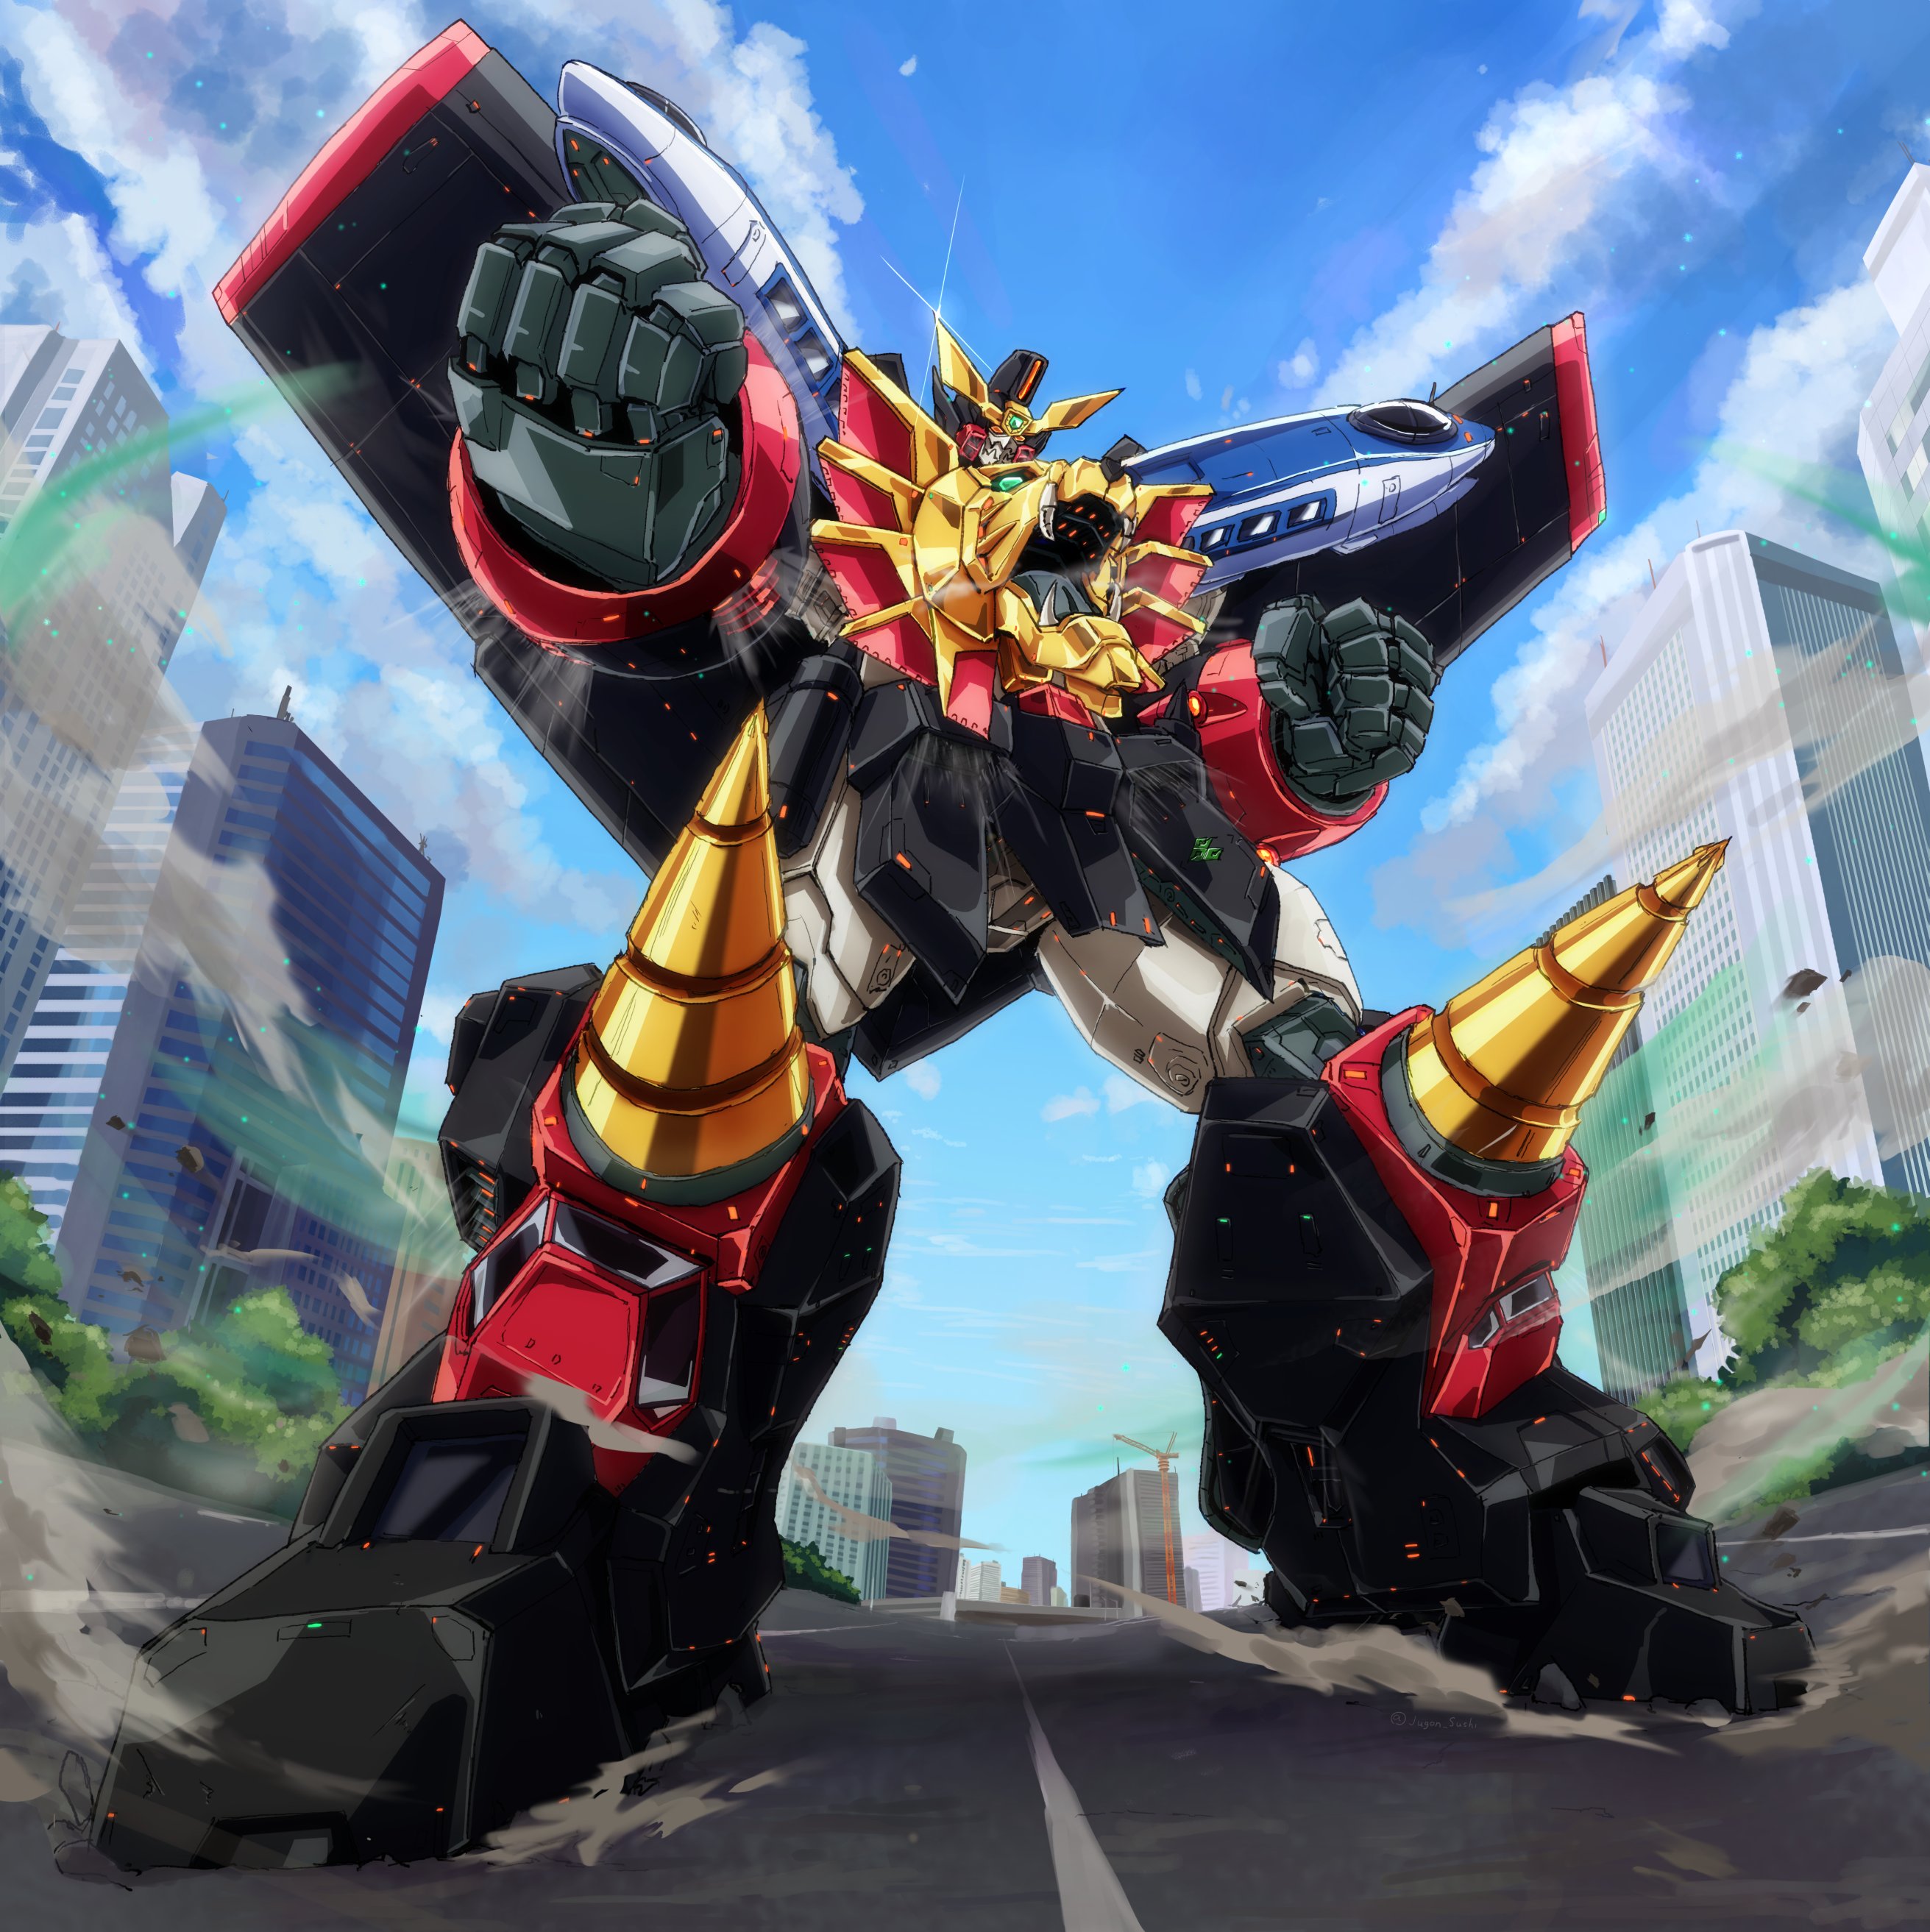 Anime 2623x2626 anime mechs Super Robot Taisen The King of Braves Gaogaigar Gaogaigar artwork digital art fan art